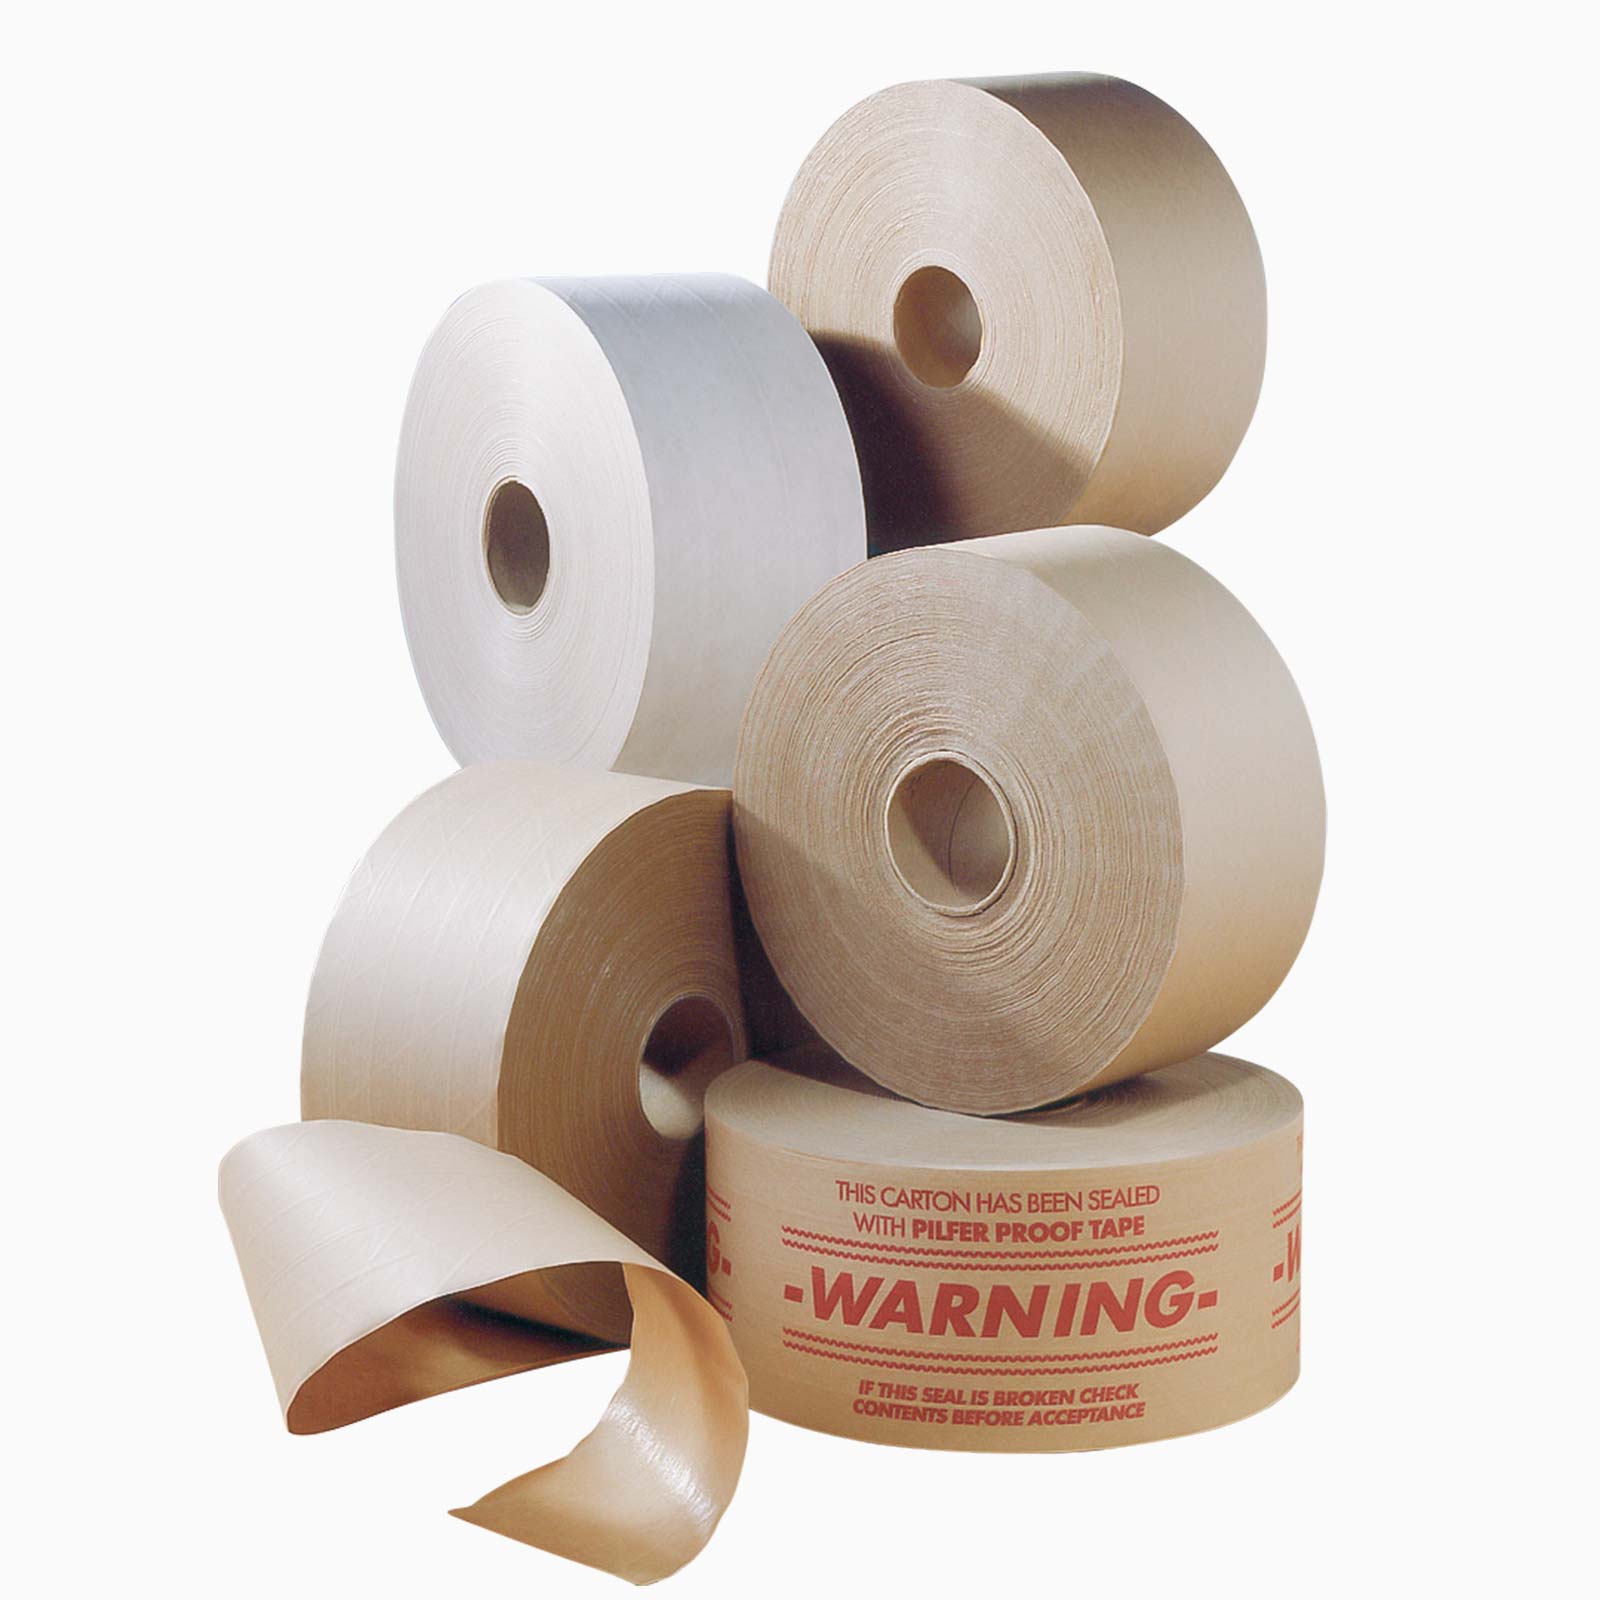 100% recyklovateľná papierová lepiaca páska s vodou aktivovateľným lepidlom, pre extra pevné zalepovanie kartónov, ktoré je možné následne recyklovať ako celok bez nutnosti odstránenia lepiacej pásky.